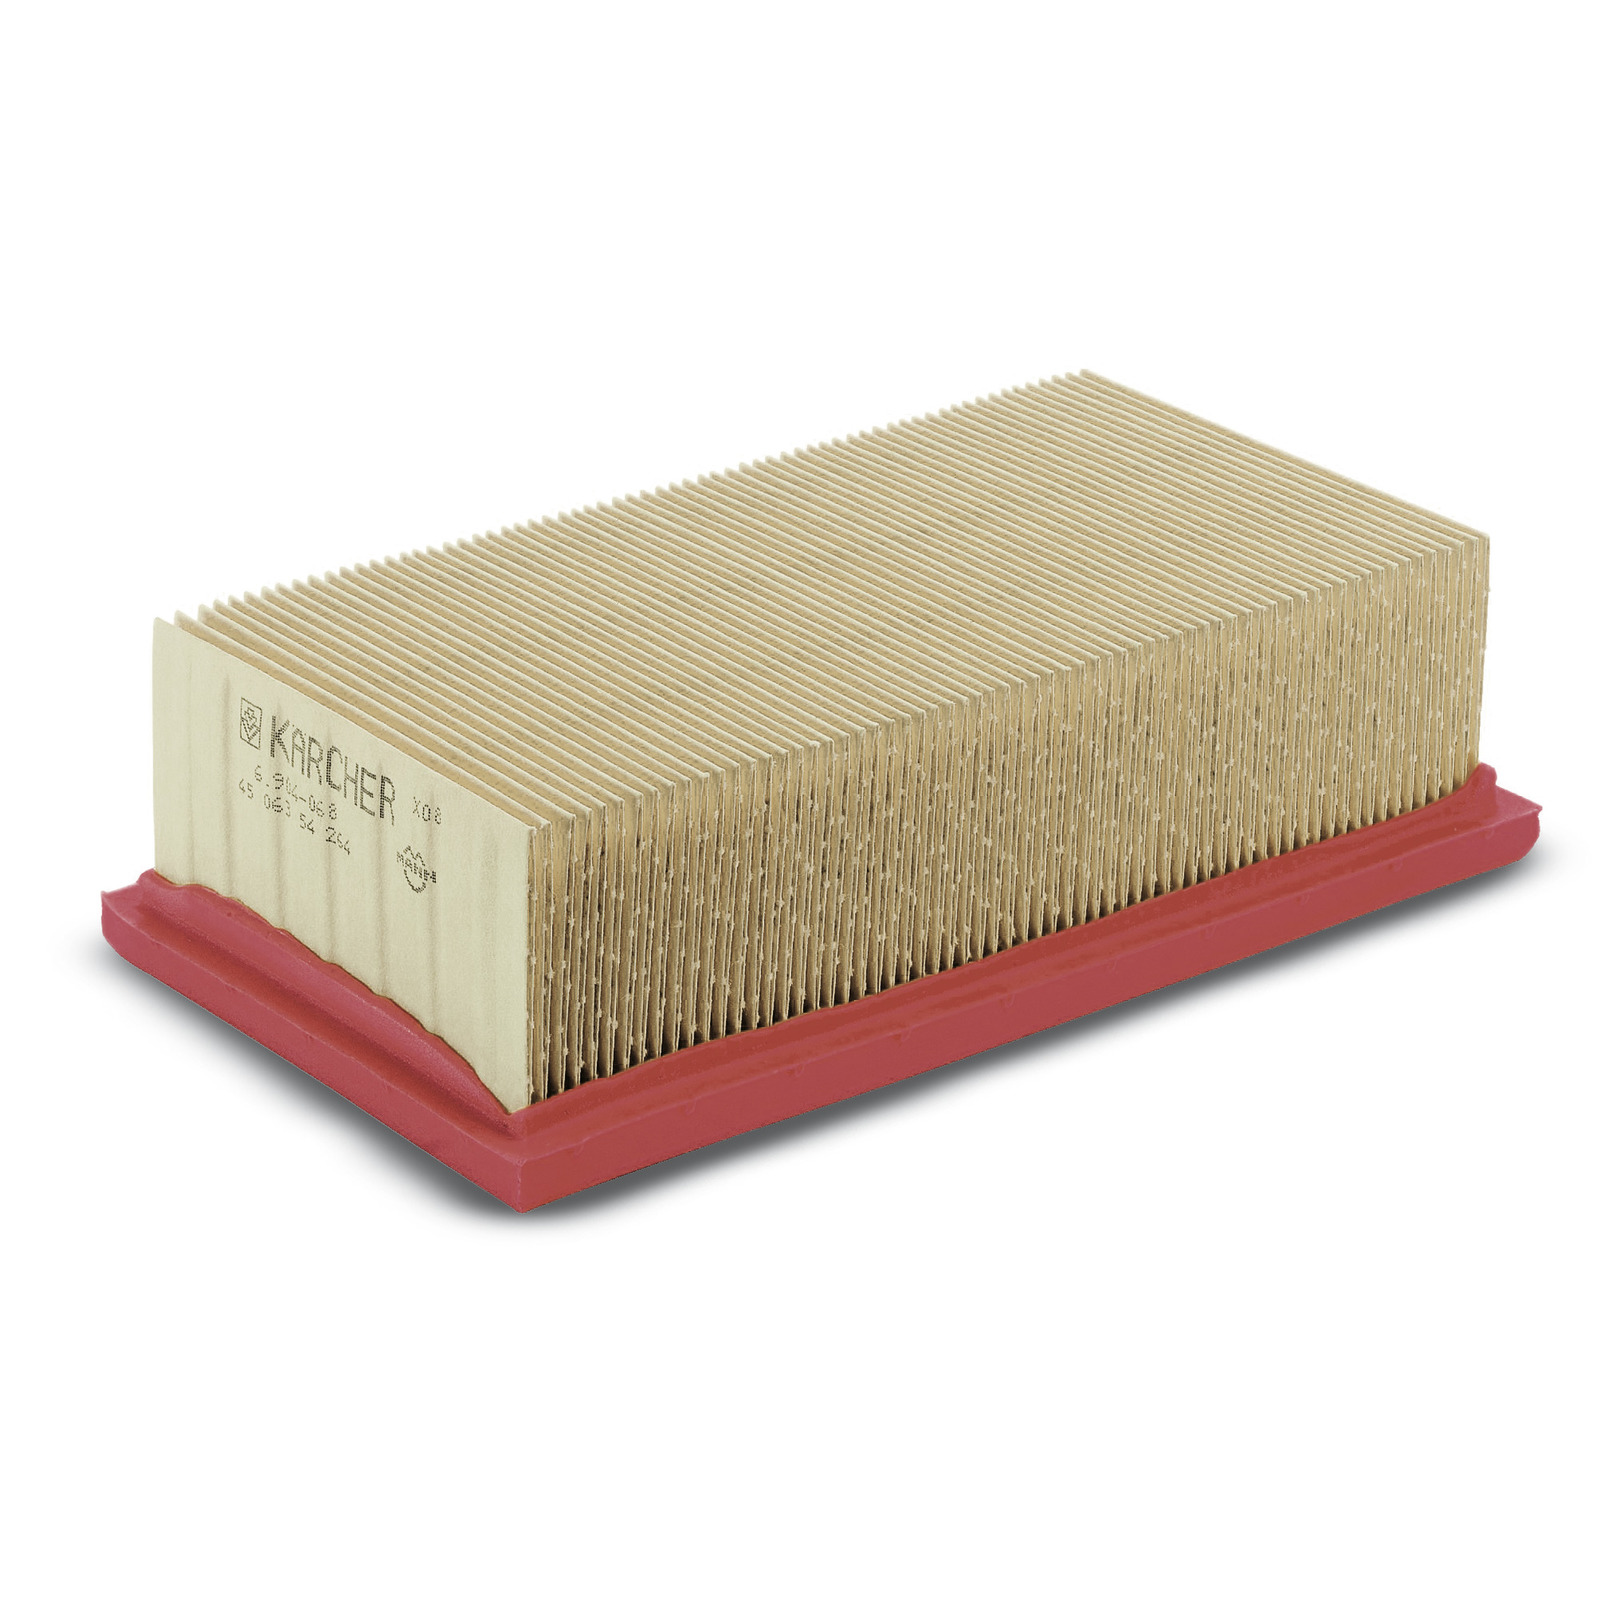 Плоский складчатый фильтр Karcher плоский складчатый фильтр с нанопокрытием для пылесосов karcher set nano 6 414 971 0